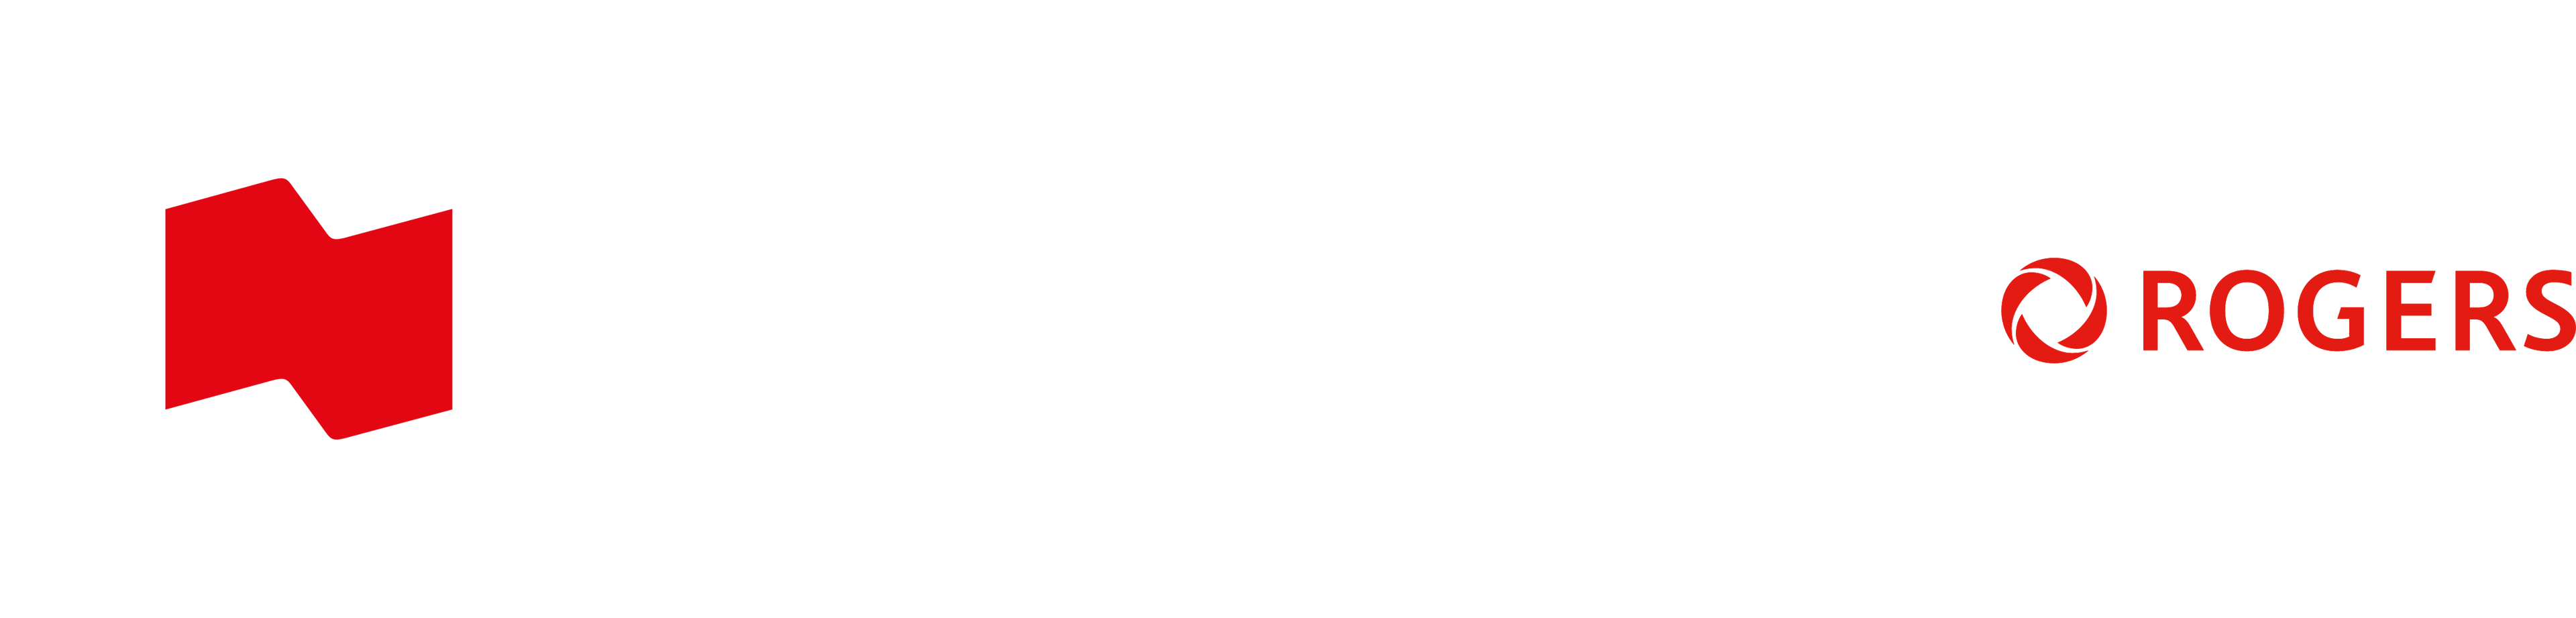 National Bank Open Toronto